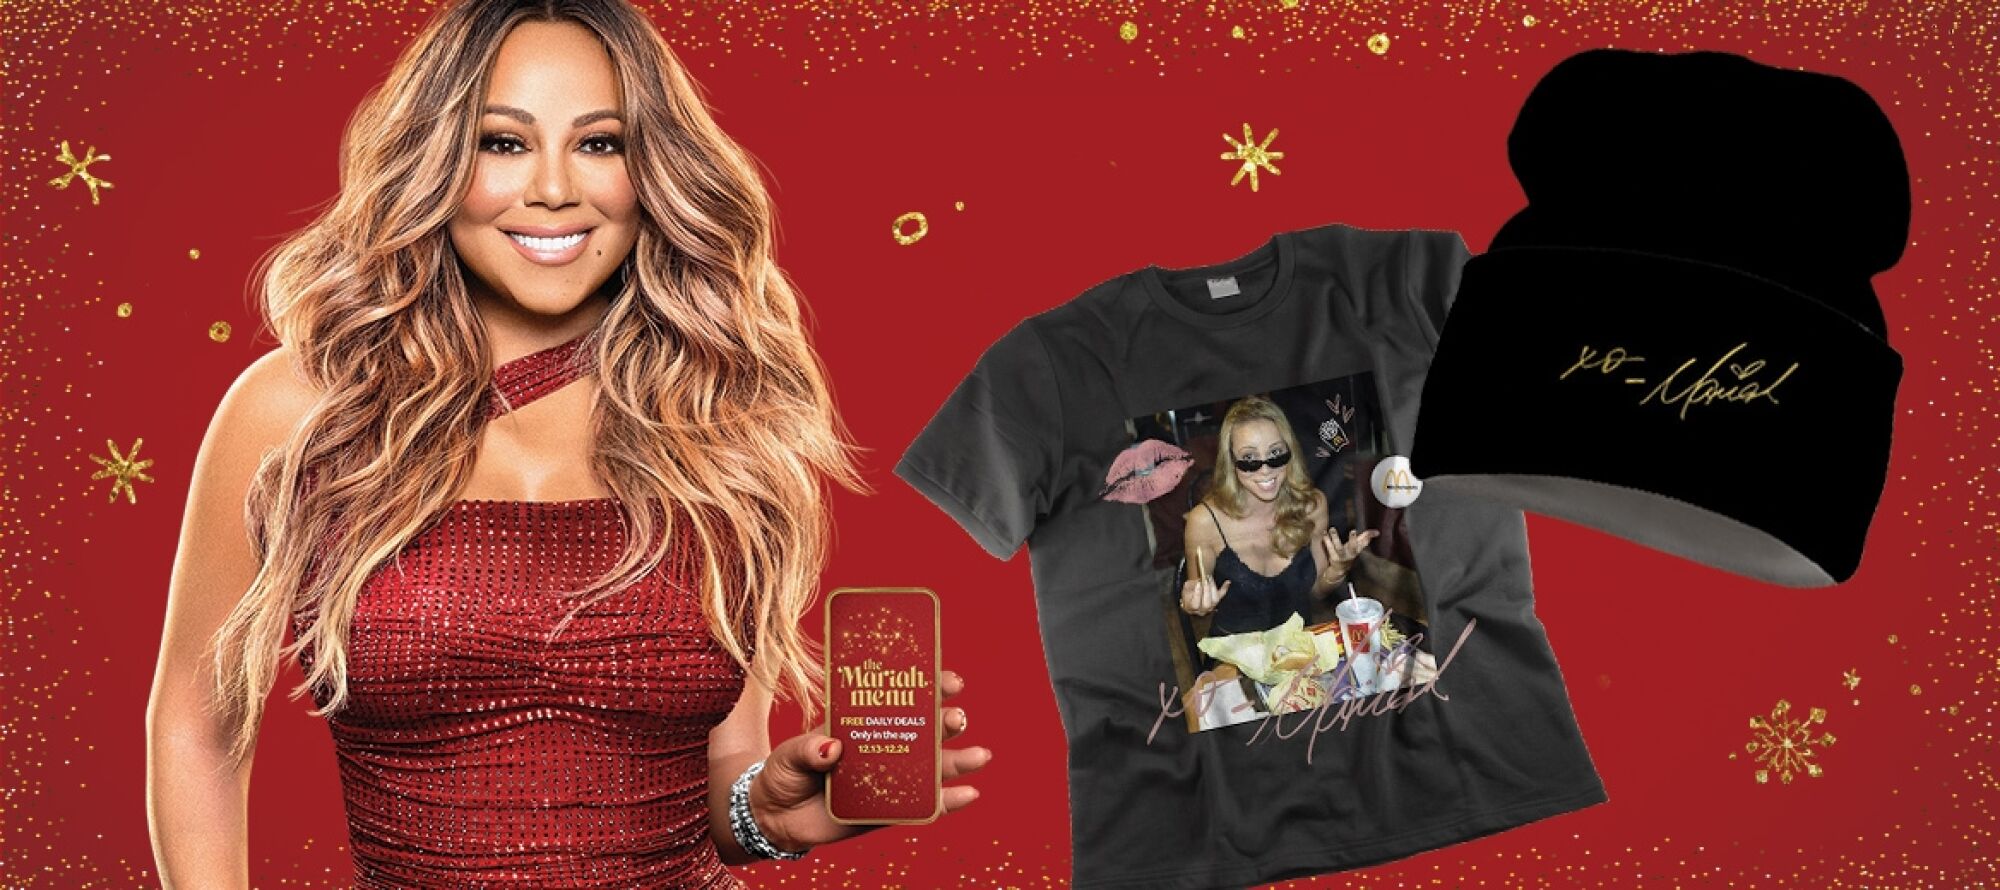 Mariah Carey estuvo muy involucrada en el menú que se ofrece con su nombre en McDonalds